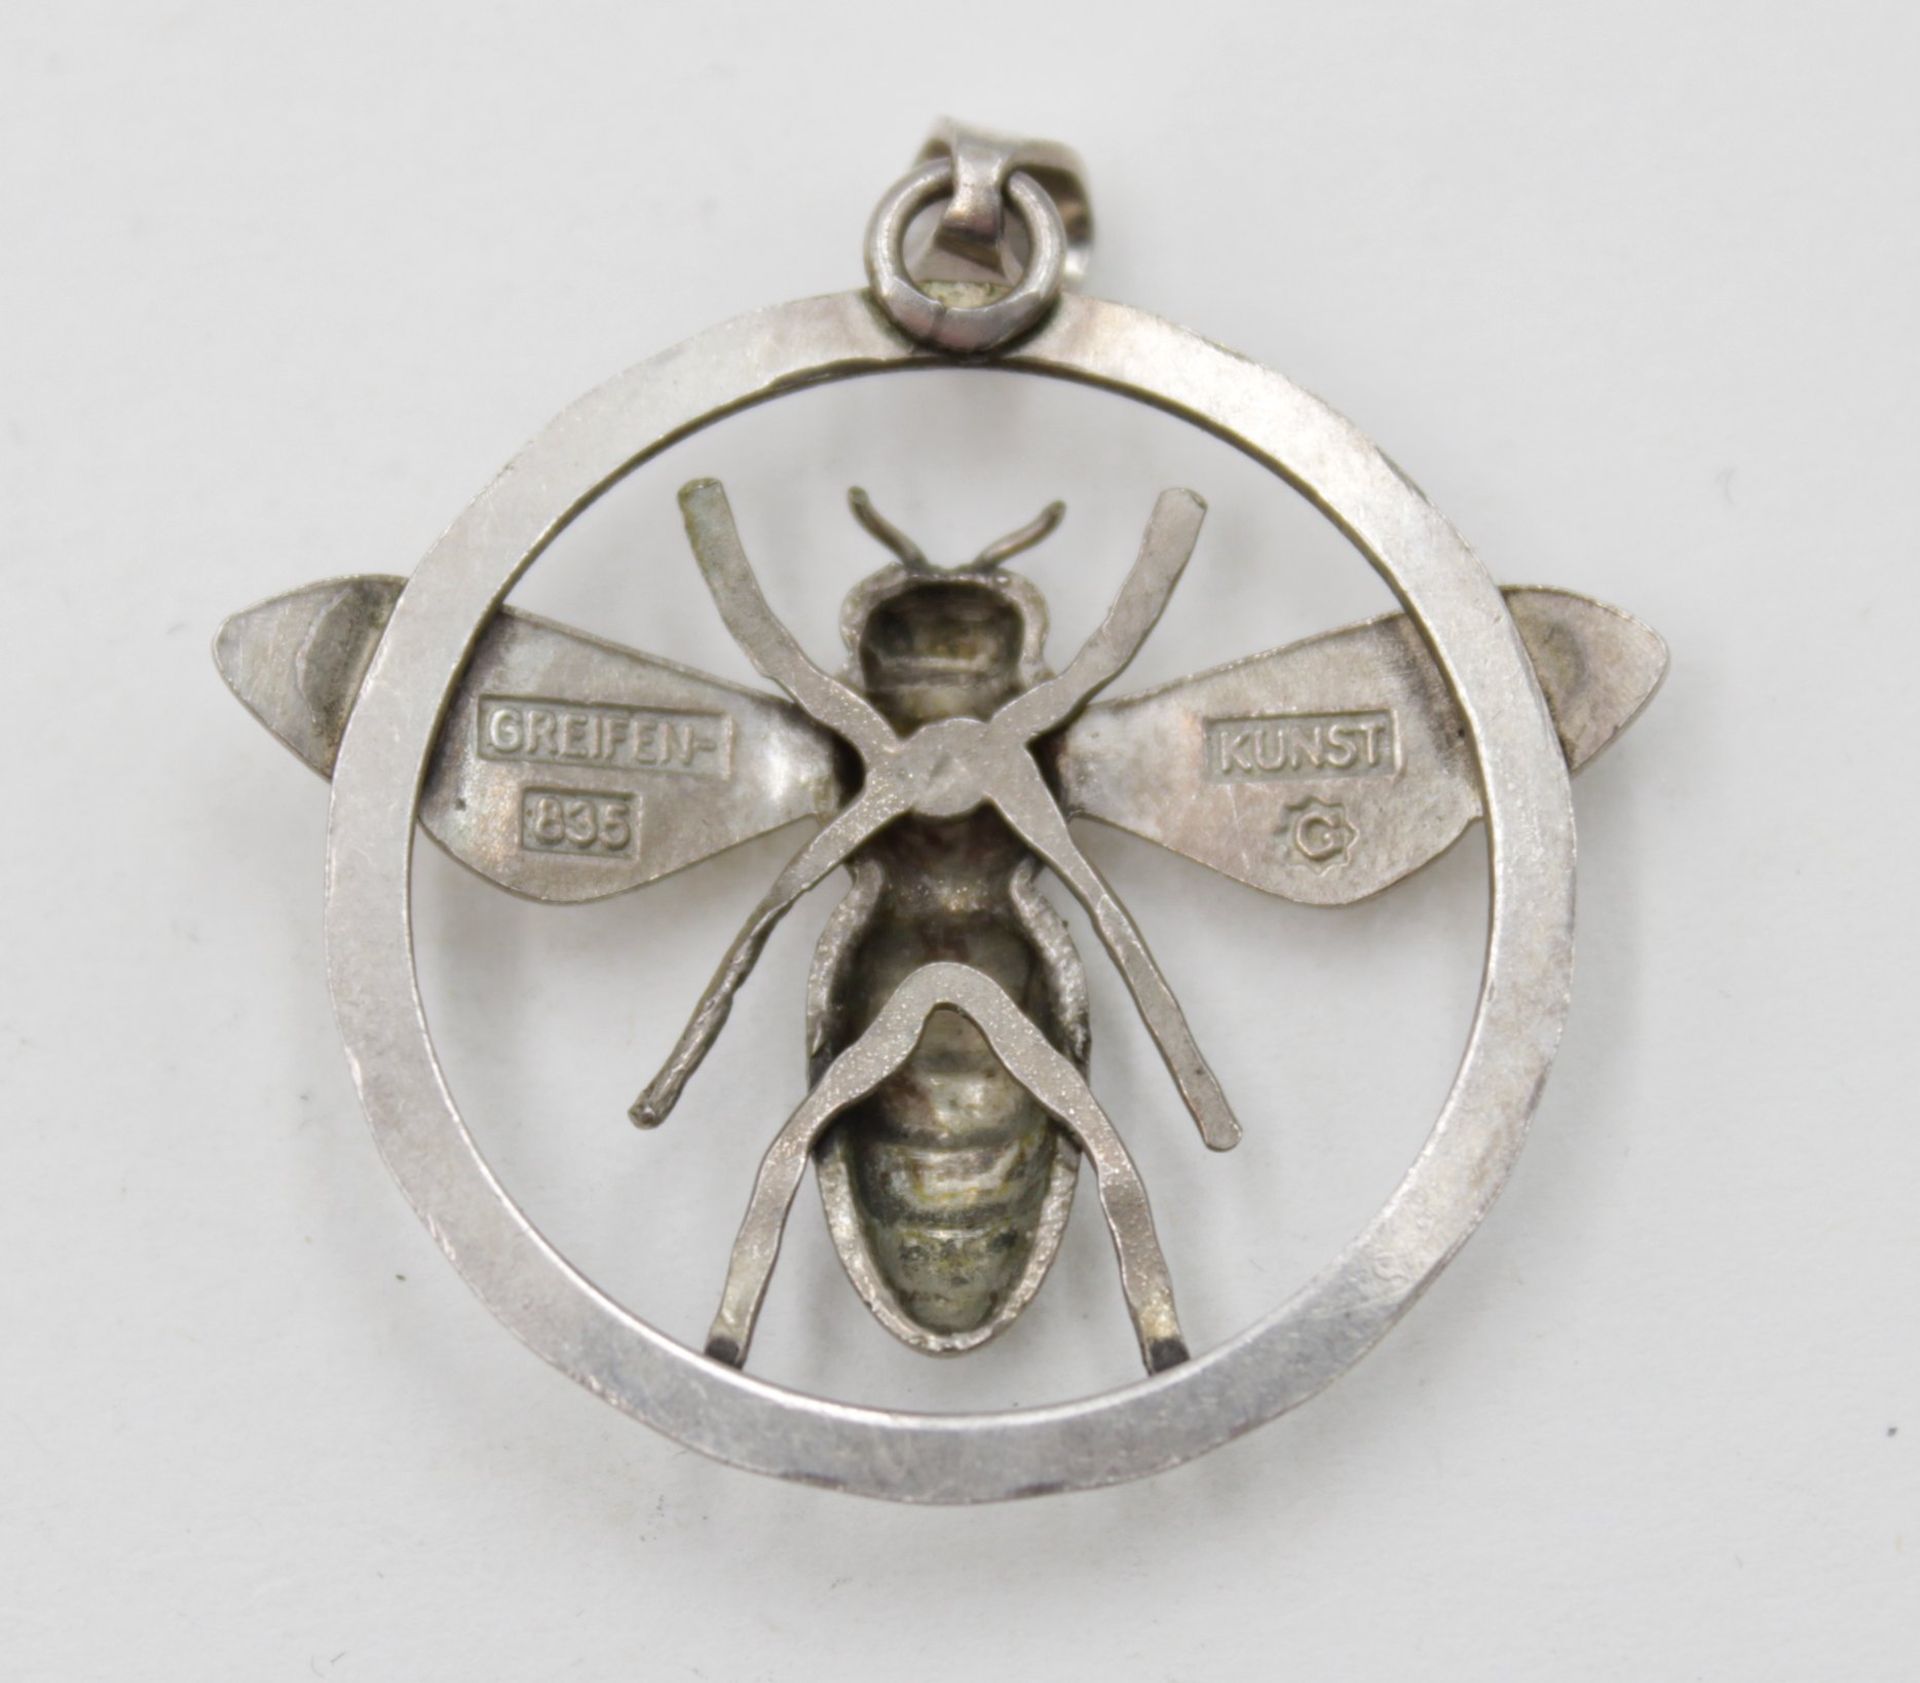 835er Silberanhänger, Greifen-Kunst, 4,4gr, ca. L-3,8cm. - Bild 2 aus 2